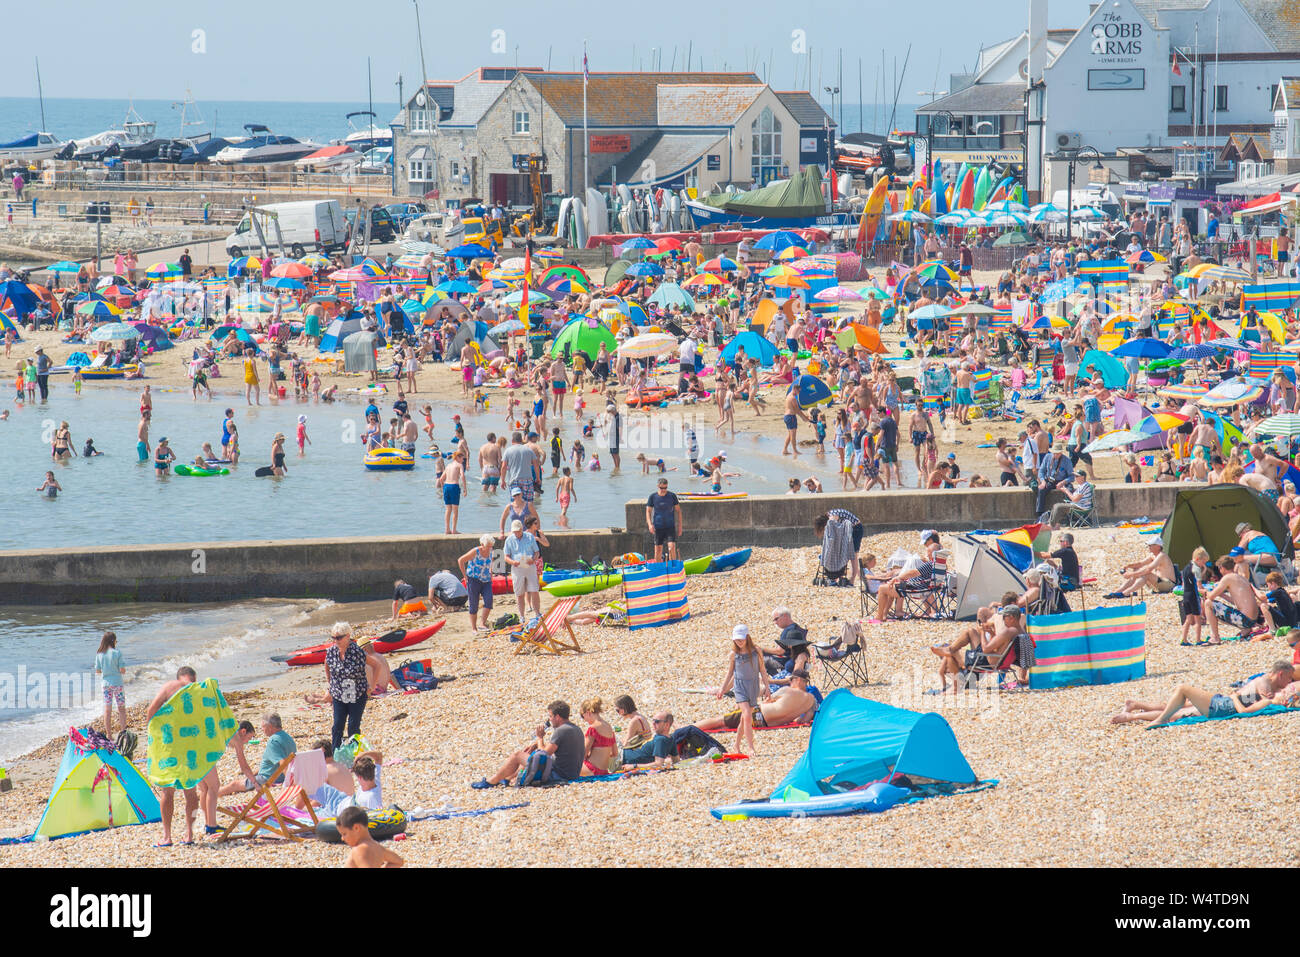 Lyme Regis, Dorset, Regno Unito. Il 25 luglio 2019. Meteo REGNO UNITO: folle di sunskeekers swelter a battere i record di calore sulla spiaggia presso la località balneare di Lyme Regis su quello che dovrebbe essere il giorno più caldo nel Regno Unito mai. I vacanzieri inglesi swelter in sfrigolanti sole caldissimo sulla città del pranzo spiaggia come le temperature si elevano verso 40 gradi centigradi. Il mare di raffreddamento è sollievo dal caldo torrido come la canicola di luglio continua. Credito: Celia McMahon/Alamy Live News. Foto Stock